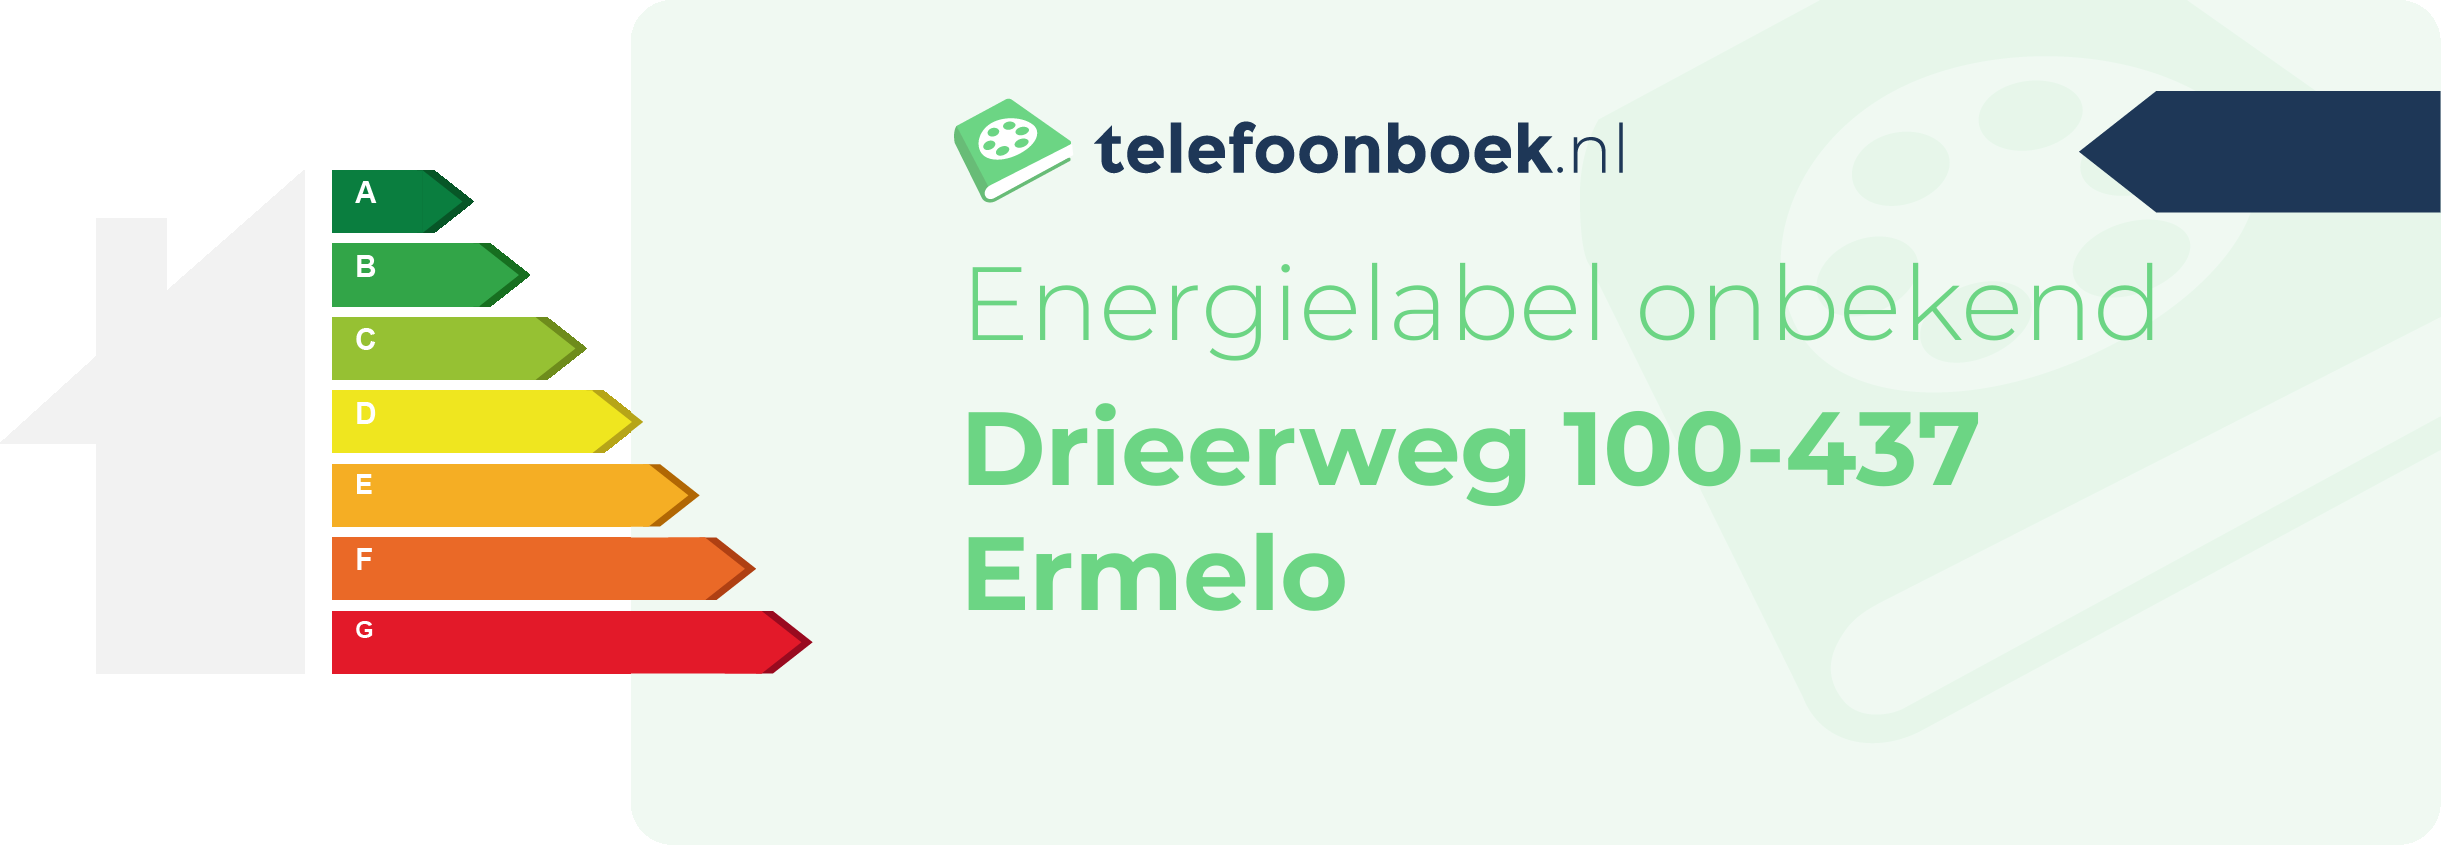 Energielabel Drieerweg 100-437 Ermelo